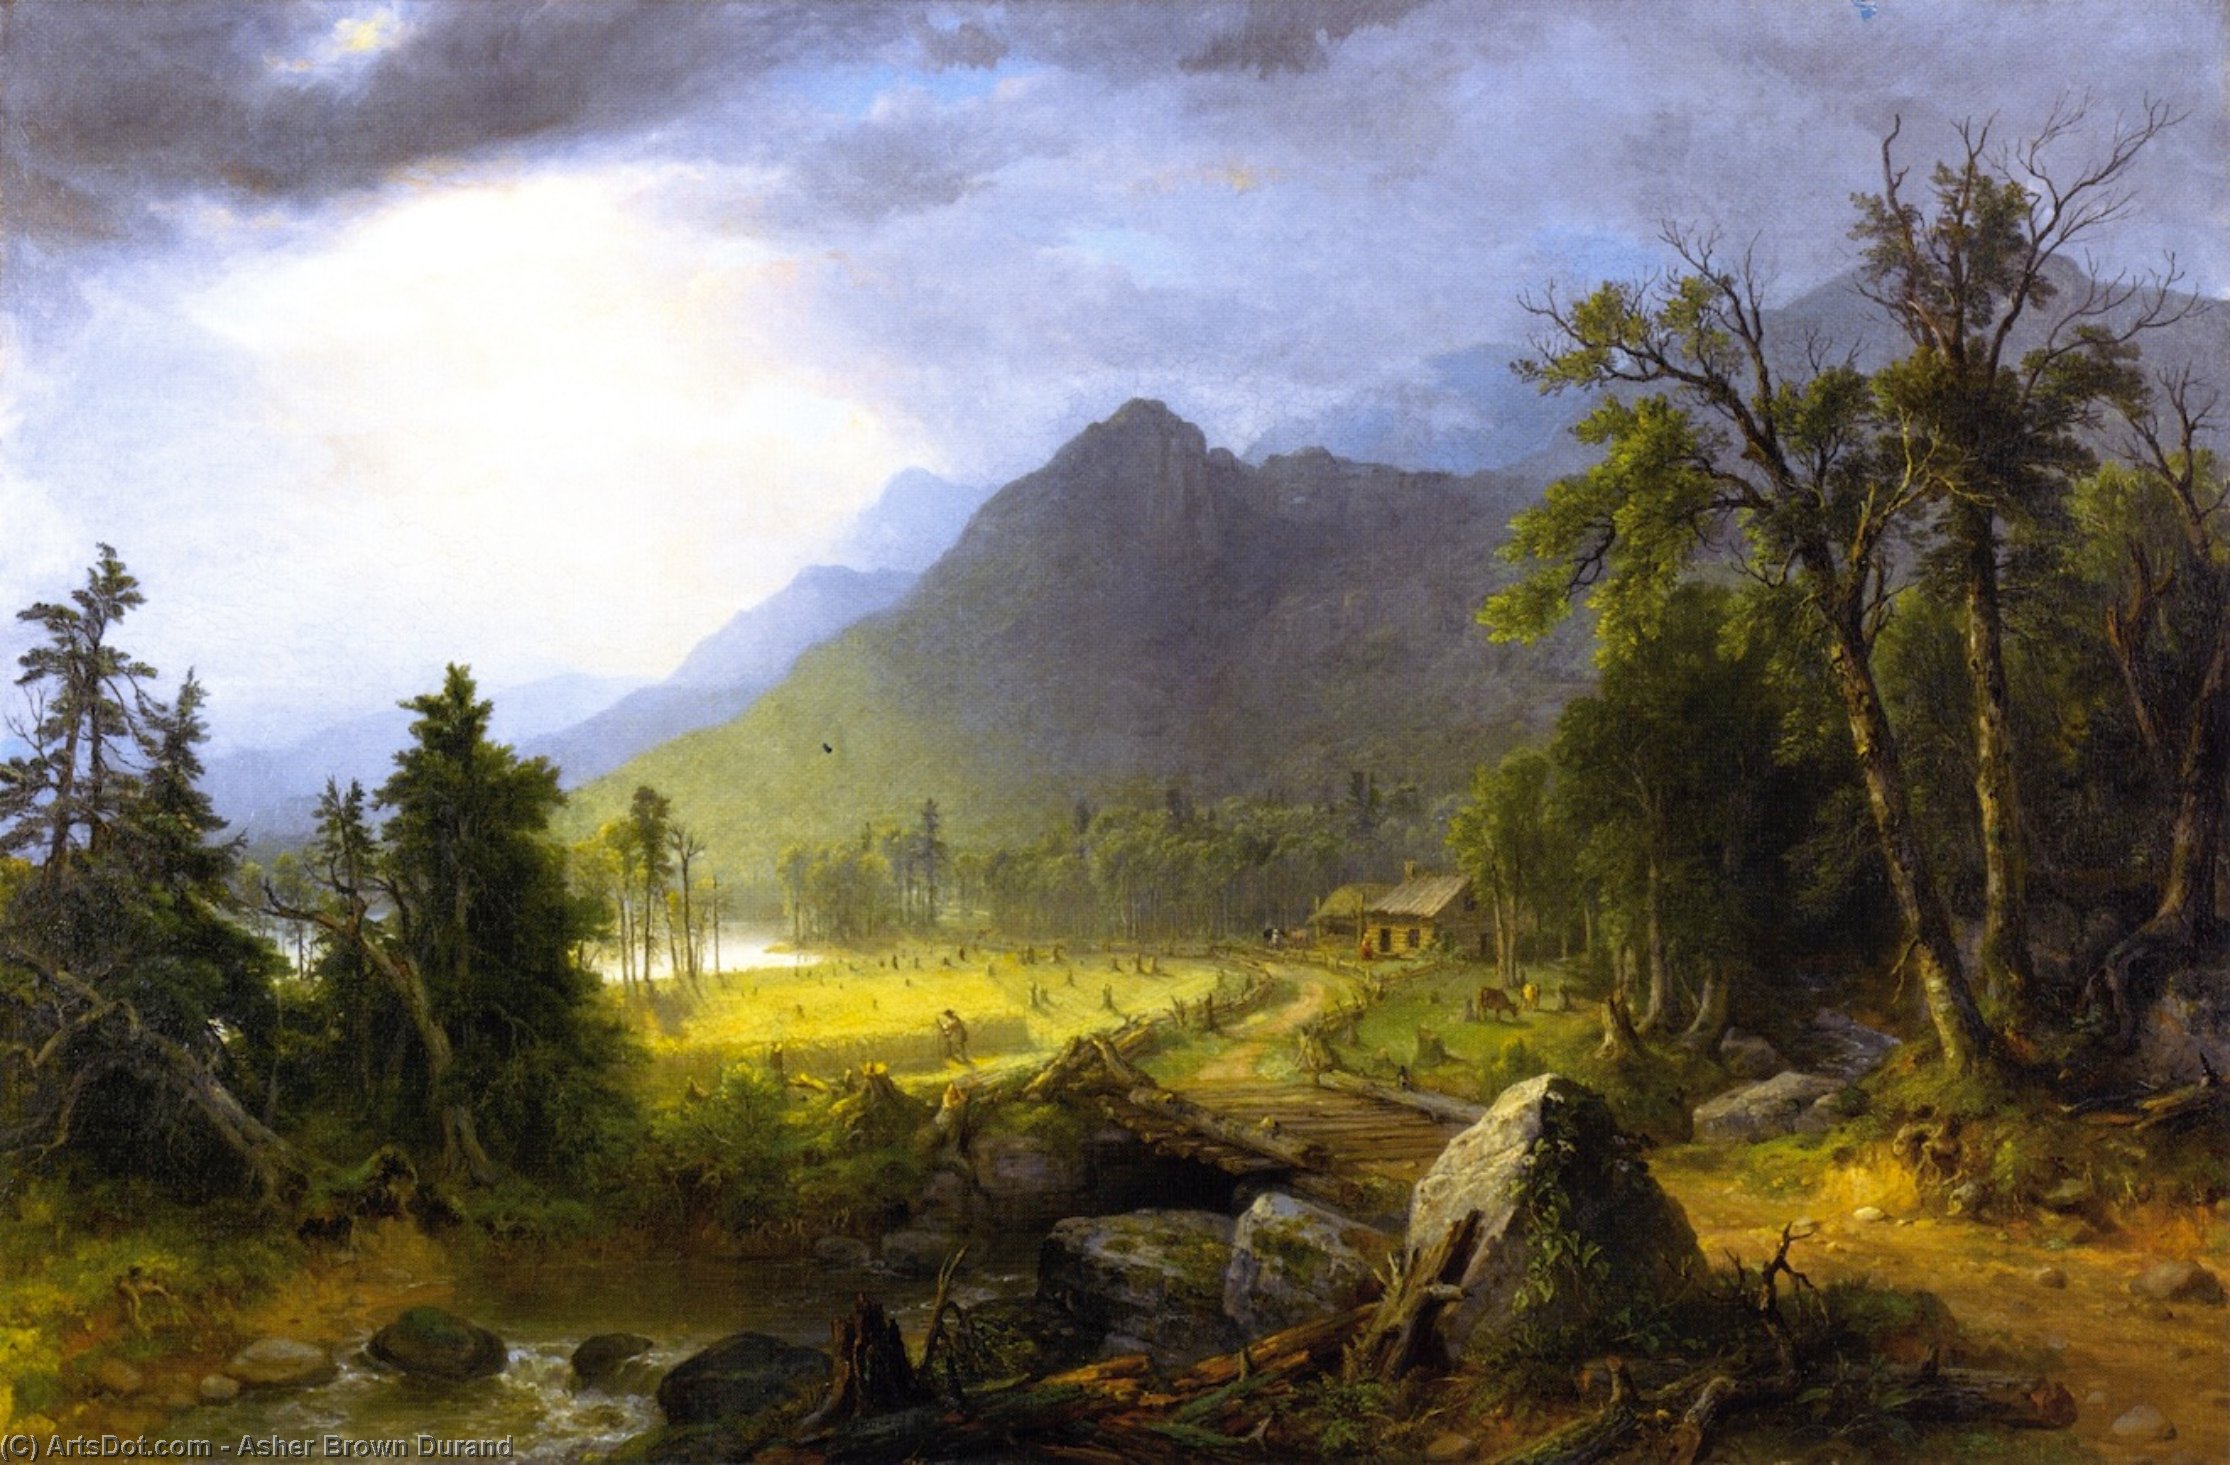 WikiOO.org - אנציקלופדיה לאמנויות יפות - ציור, יצירות אמנות Asher Brown Durand - The First Harvest in the Wilderness